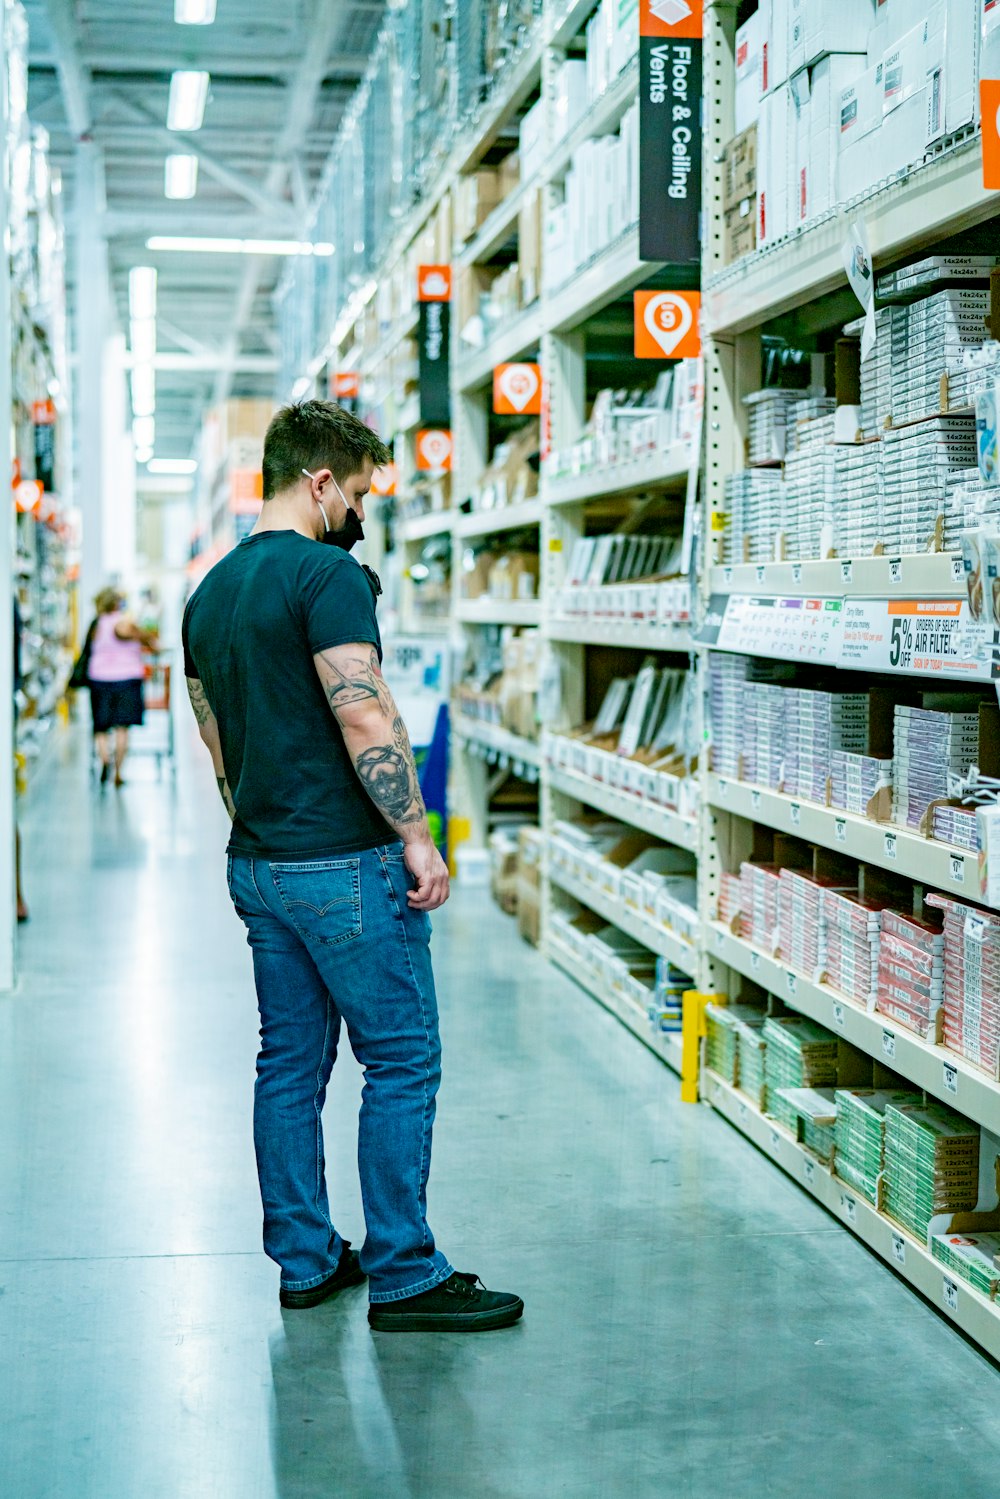 Un hombre parado en el pasillo de una tienda mirando artículos